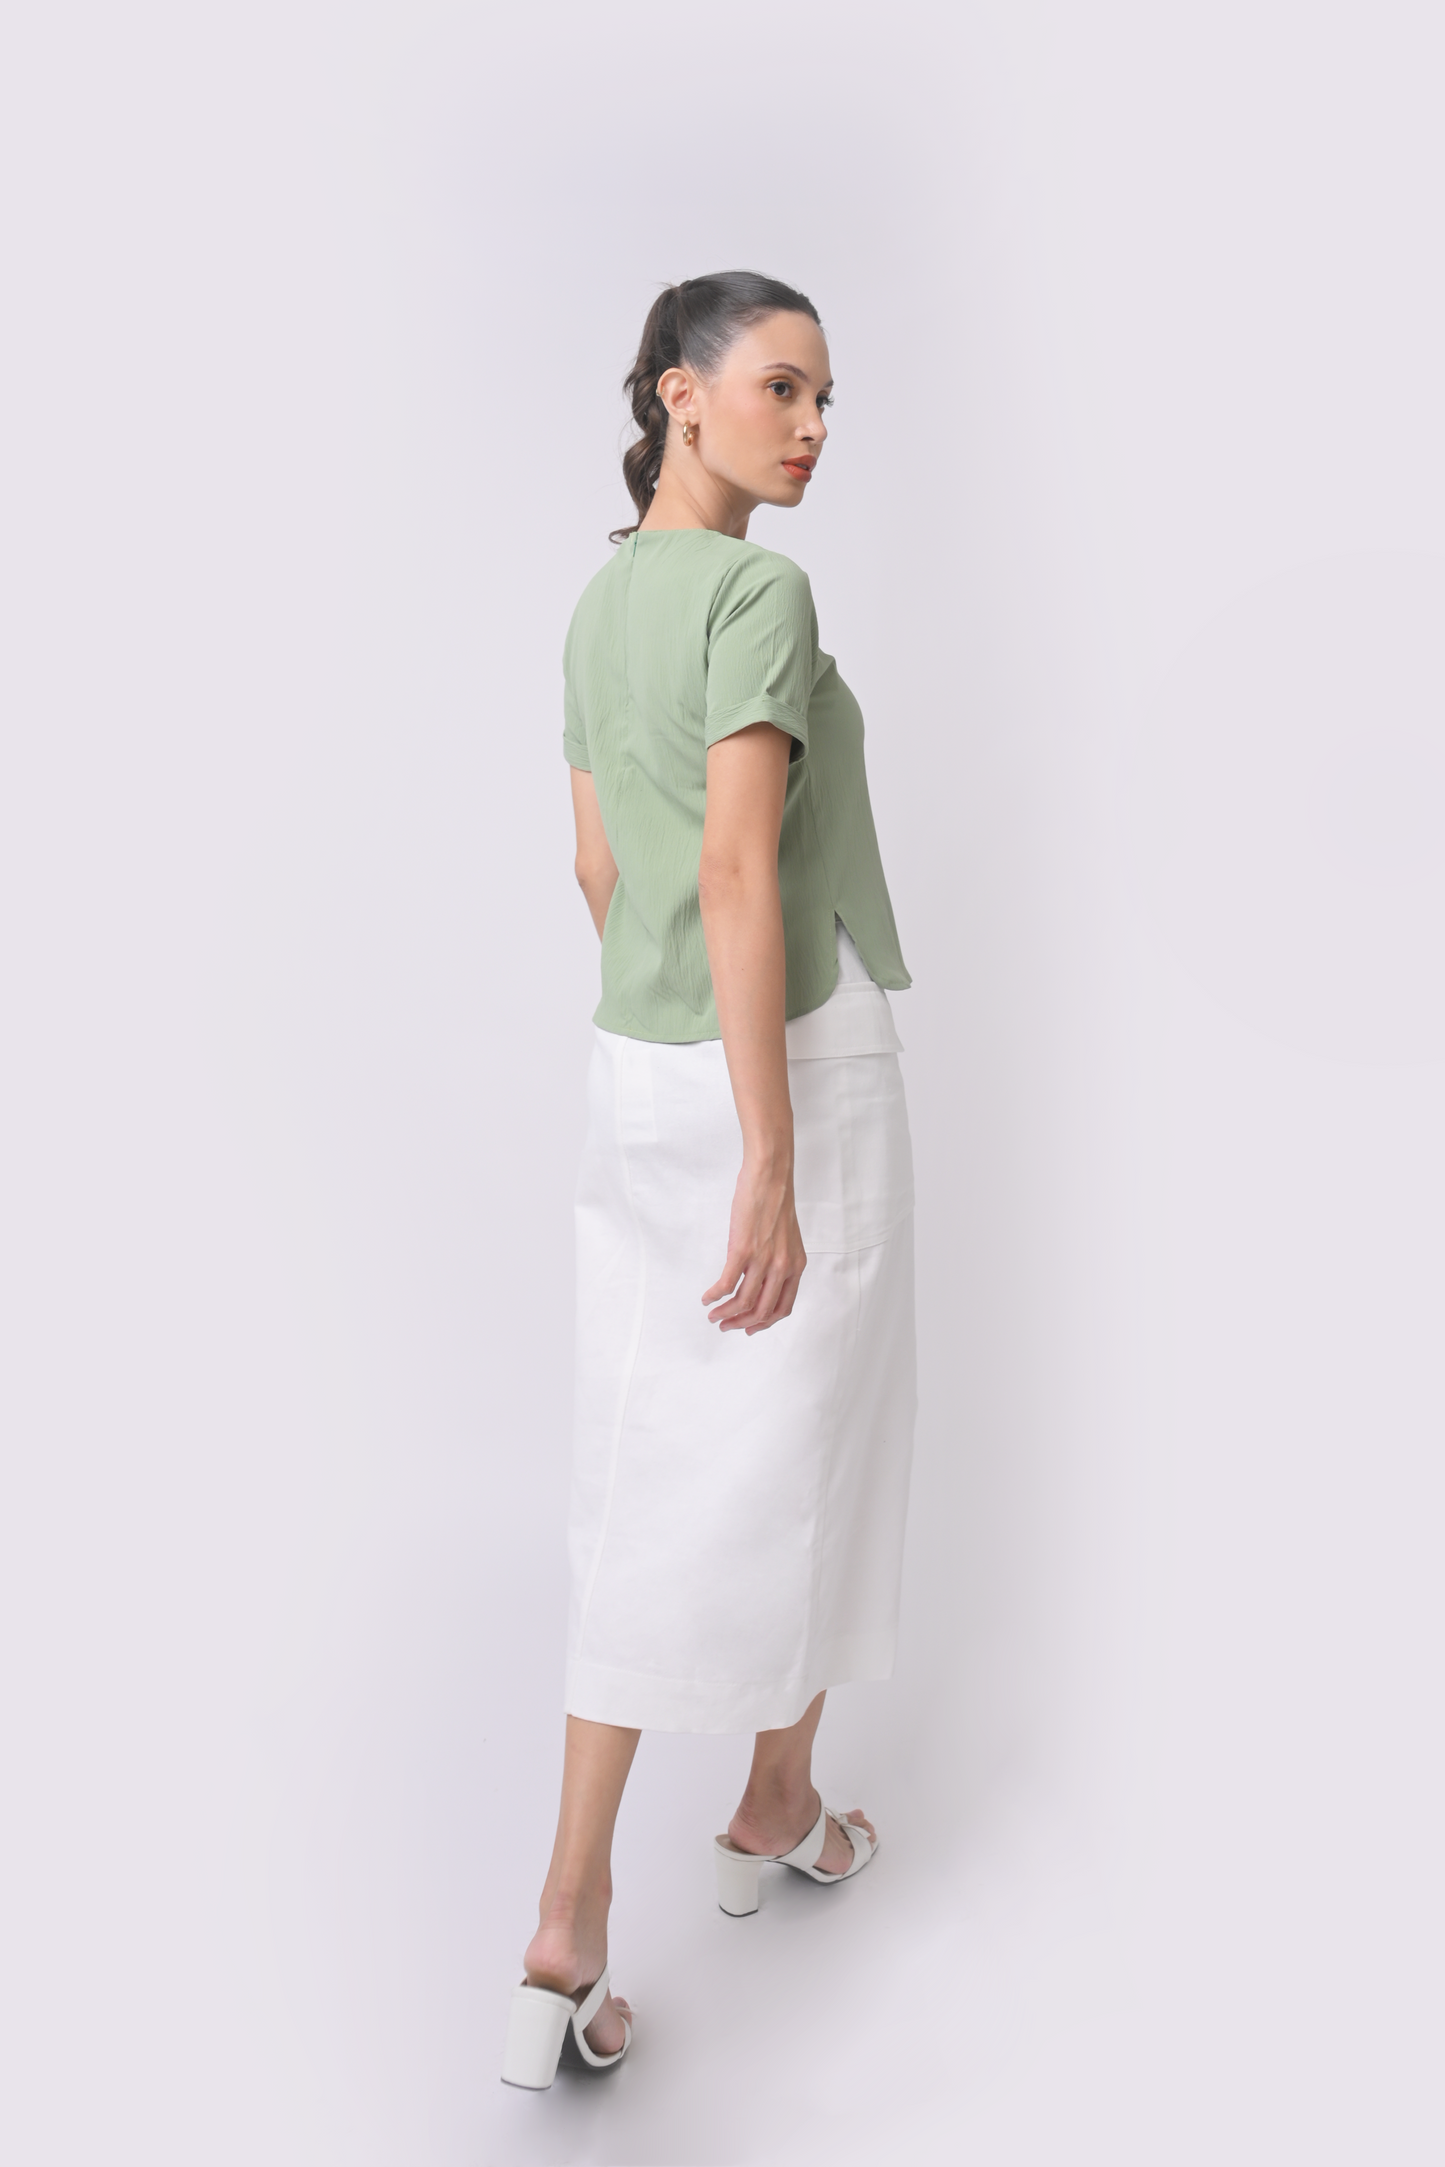 Axton Denim Skirt (White)